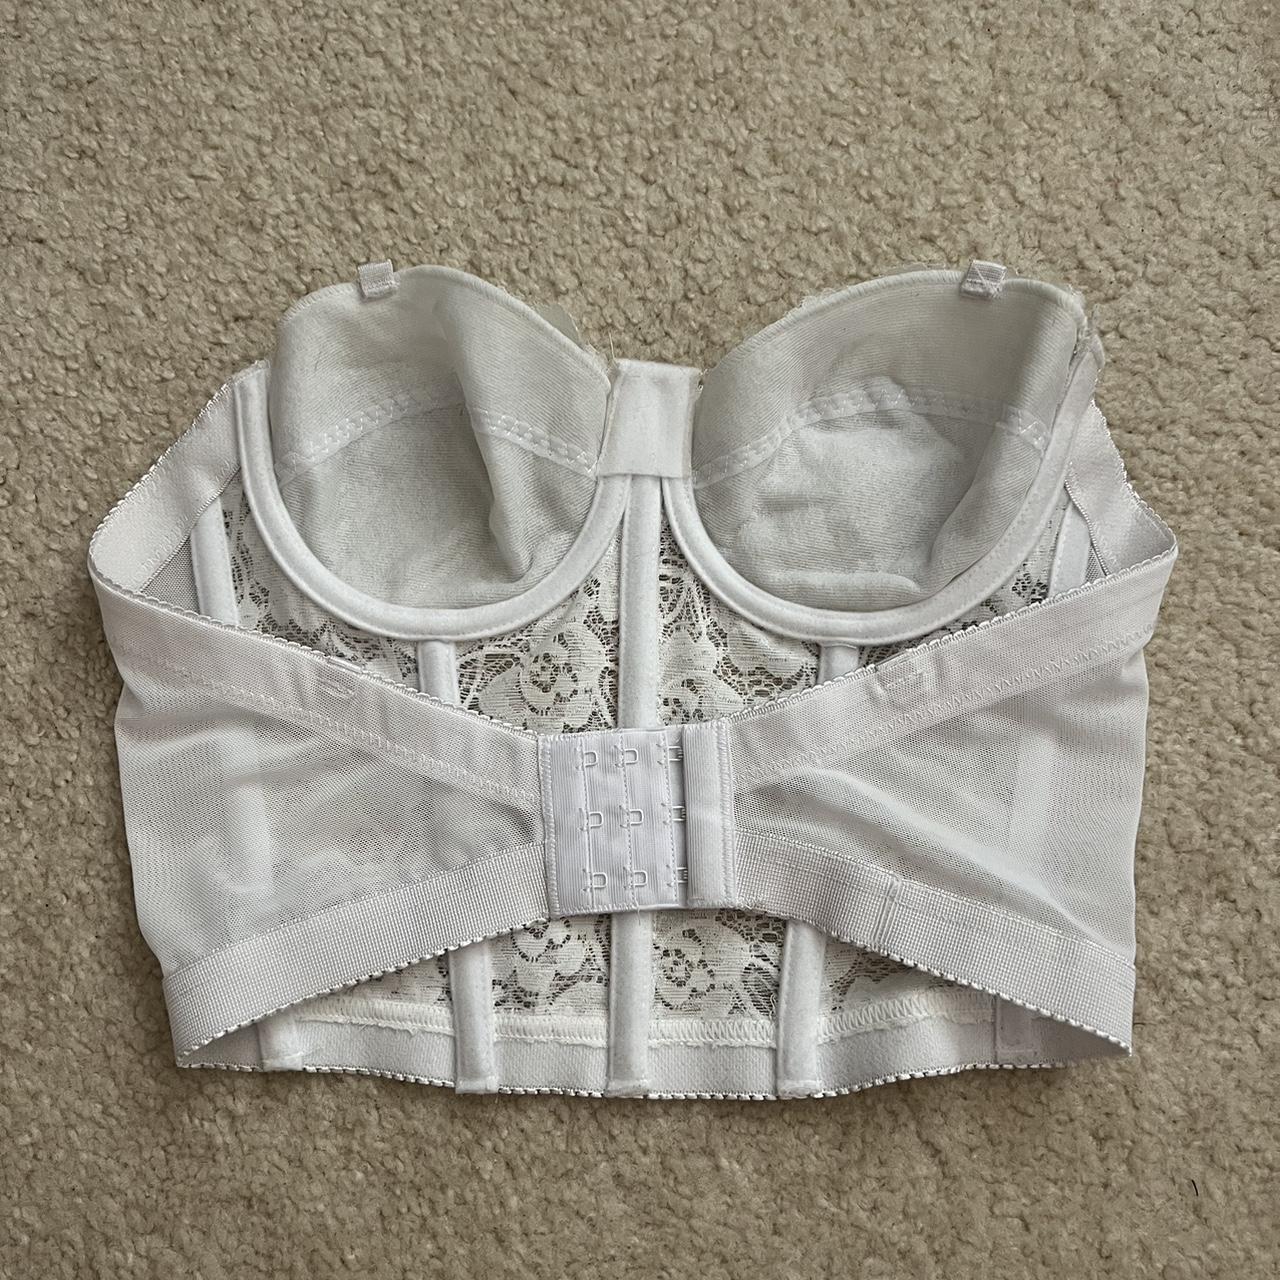 Victoria's Secret Vintage Y2K white corset bustier bra 34B Size undefined -  $67 - From Prairie